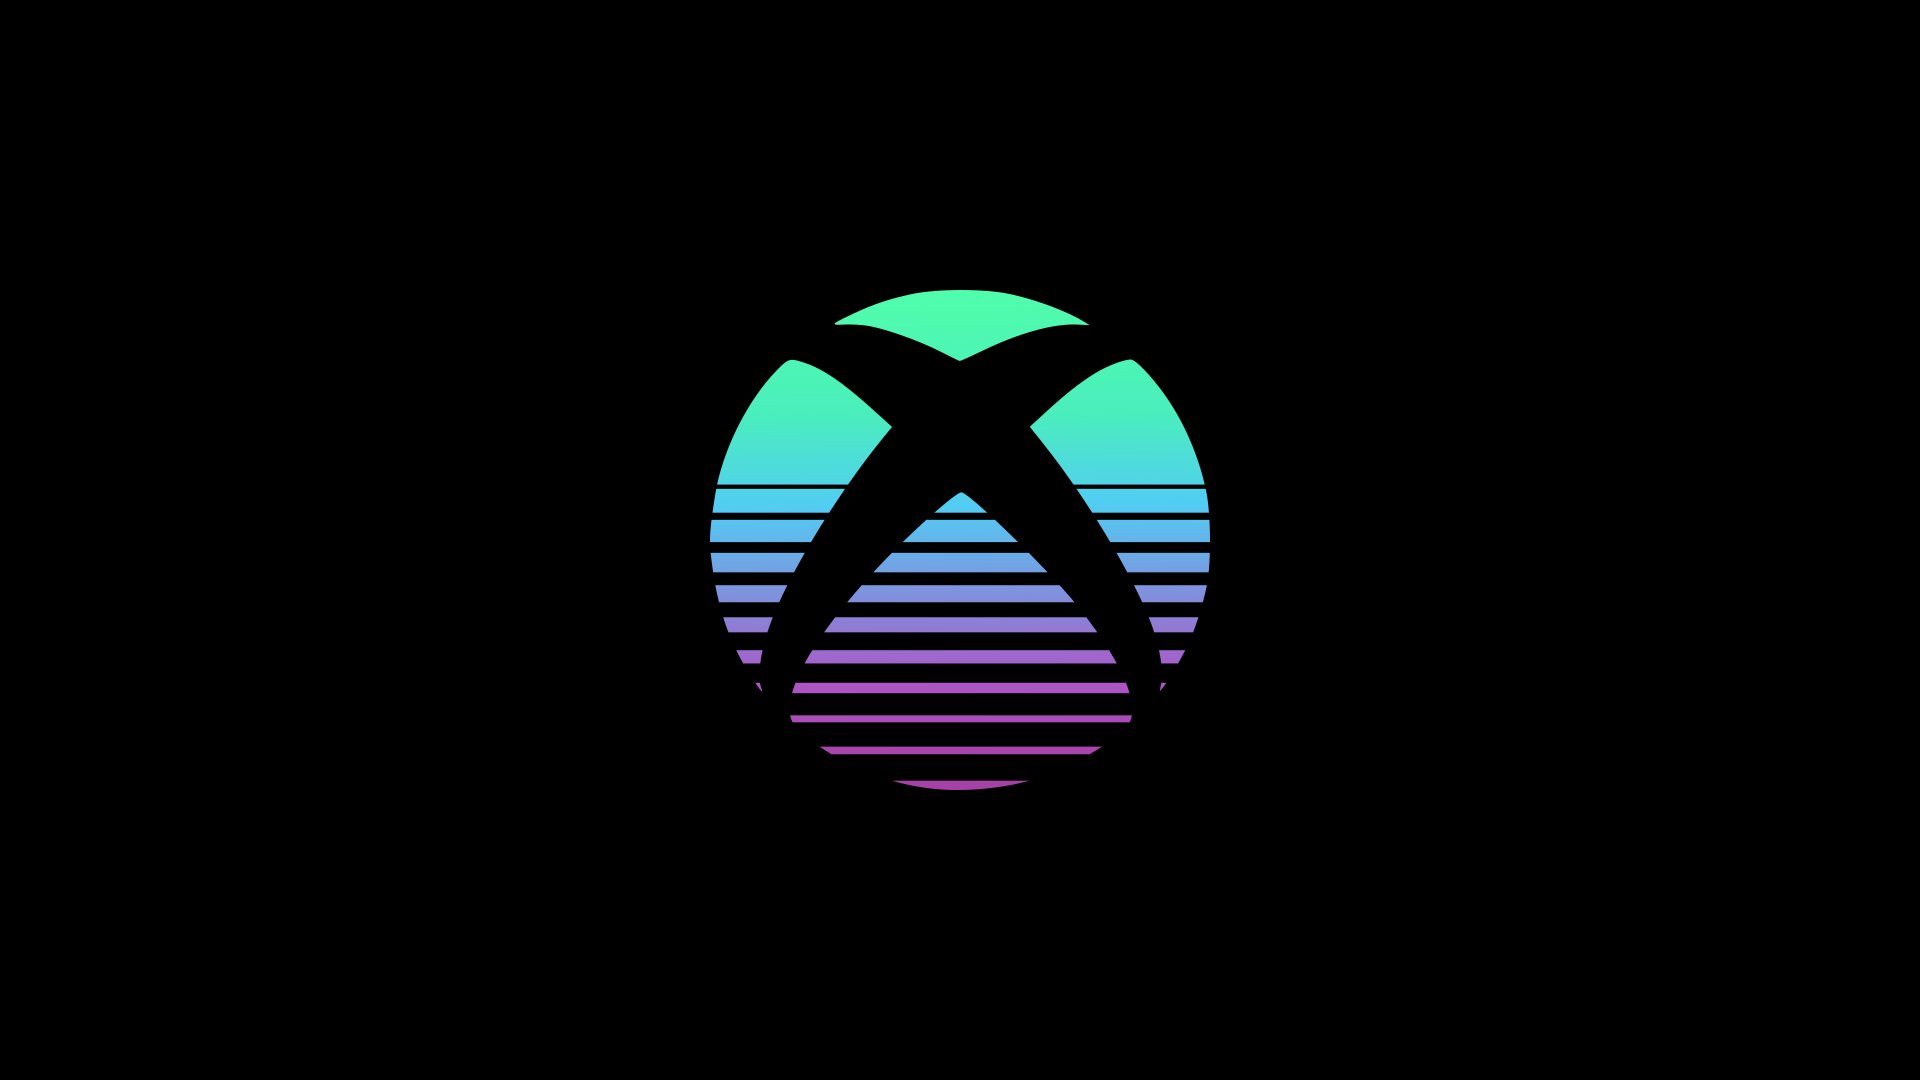 Xbox Logo Wallpaper 4k Ultra HD ID:9161